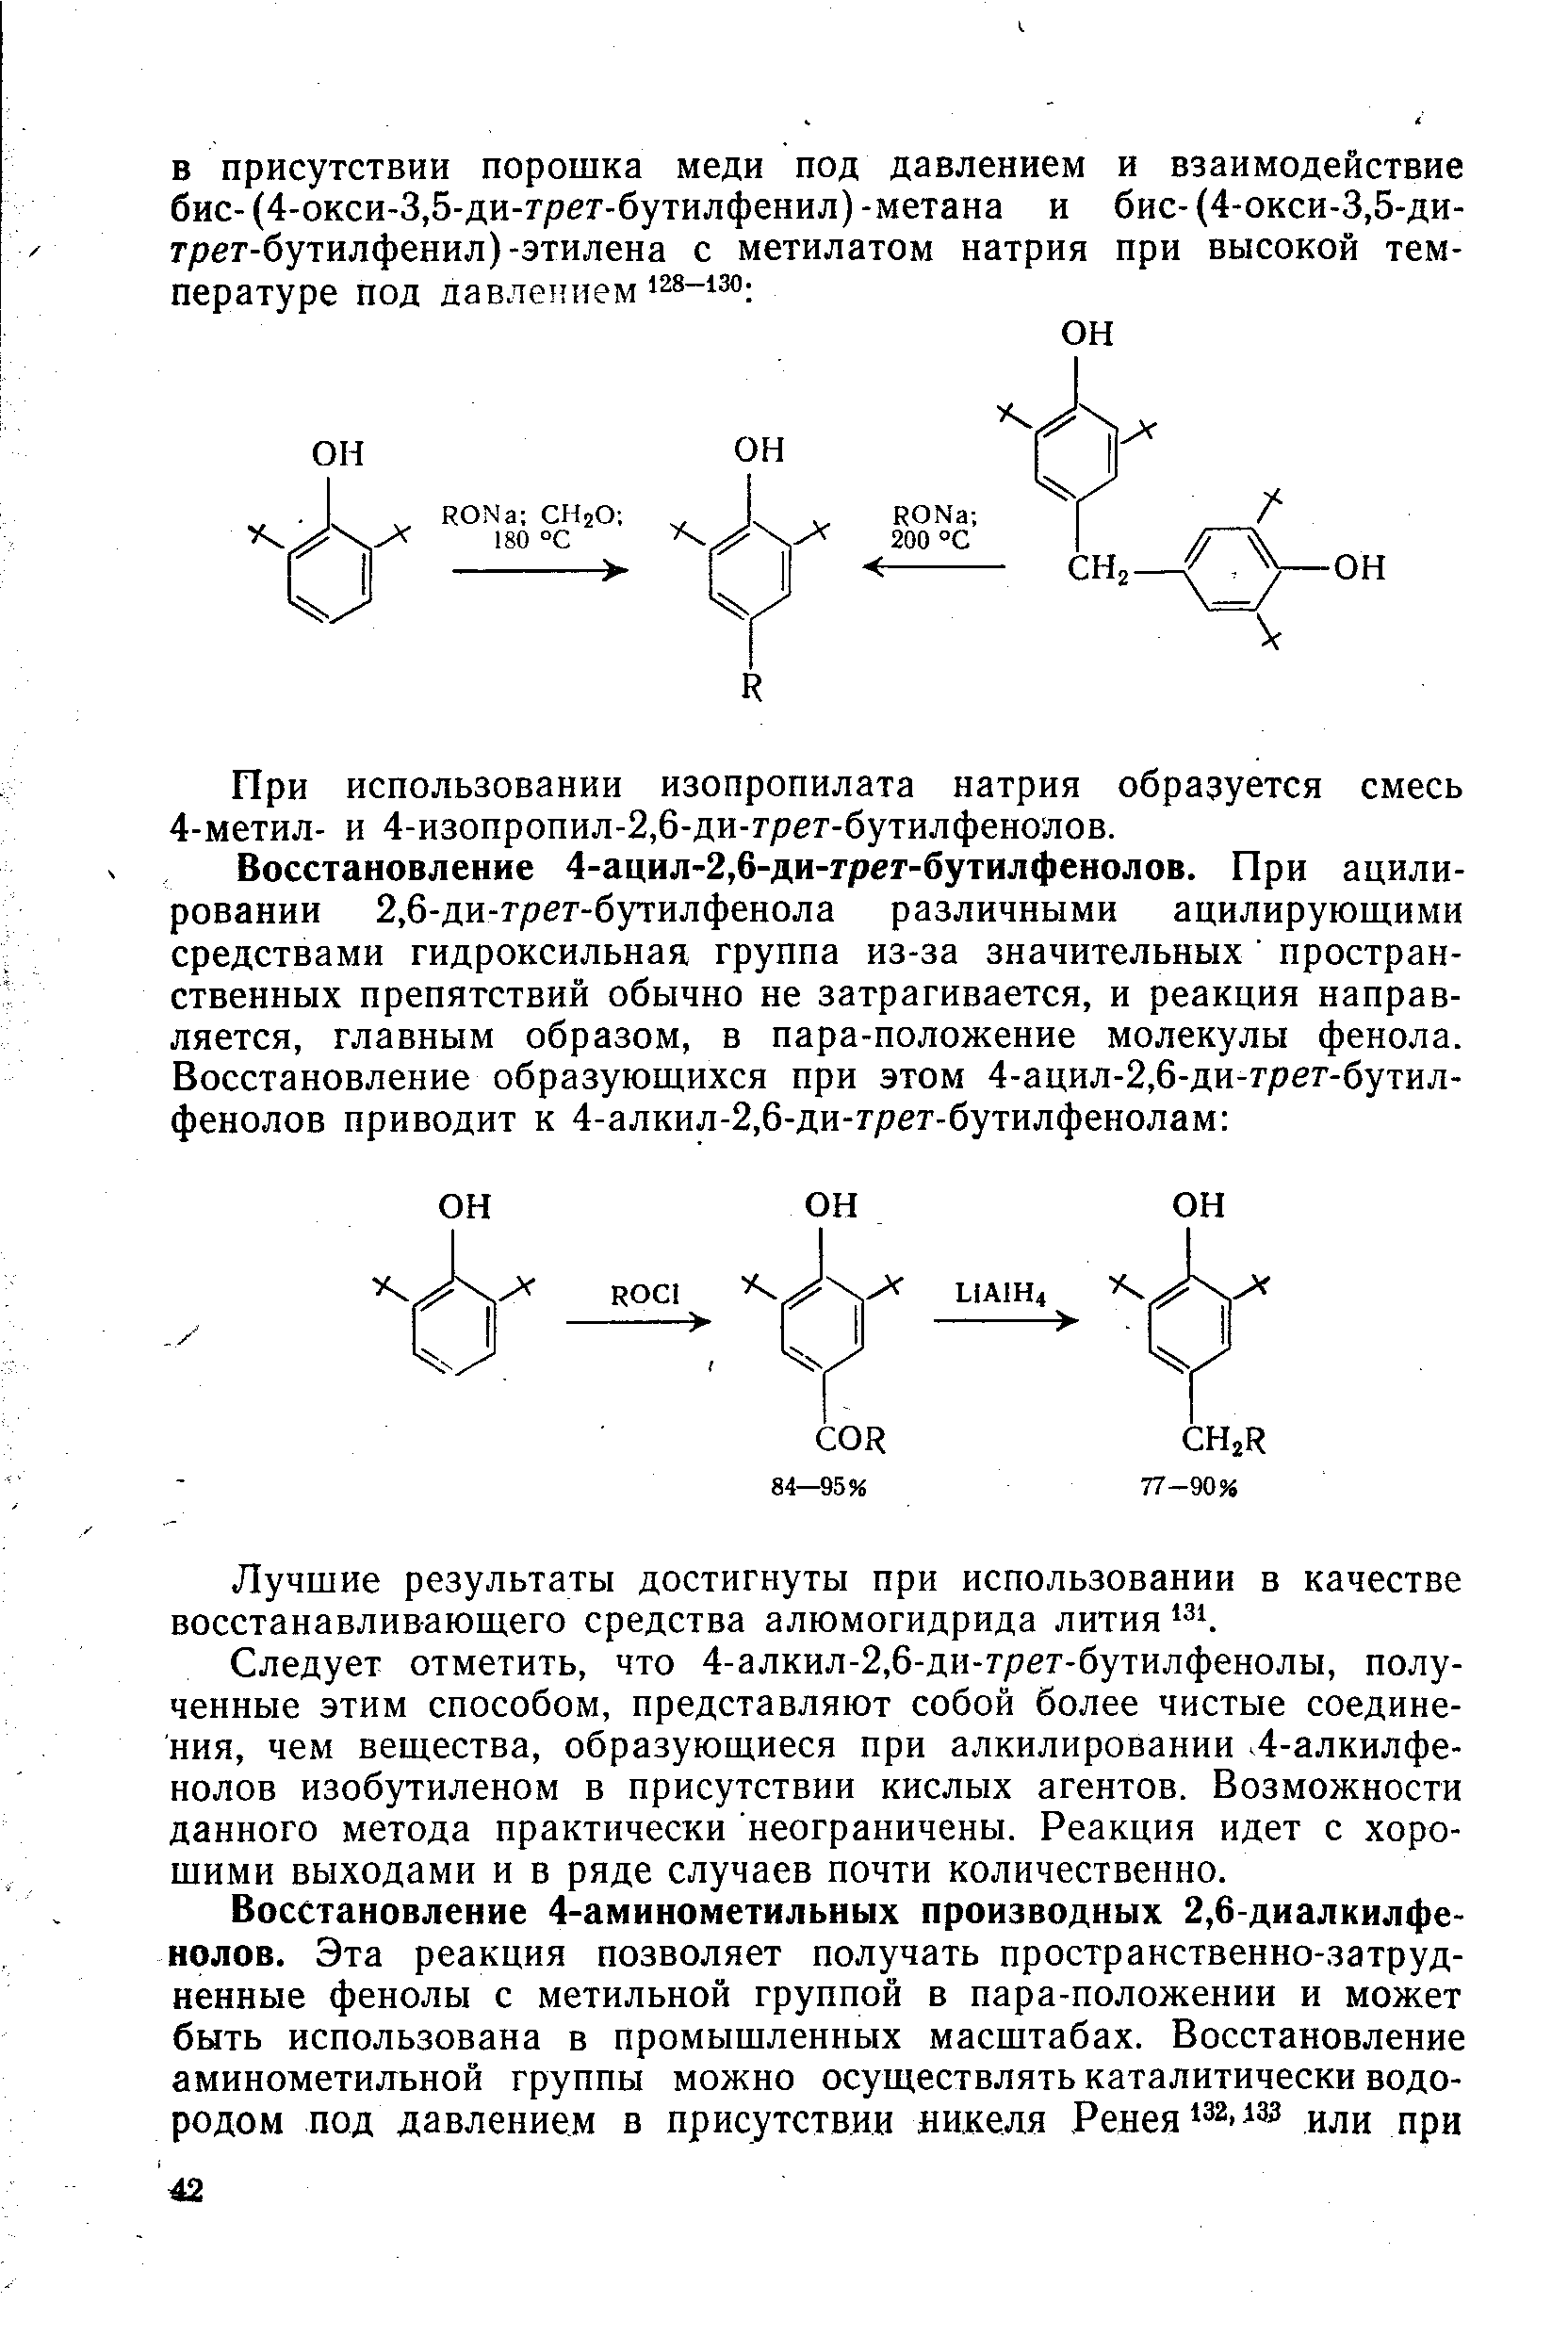 При использовании изопропилата натрия образуется смесь 4-метил- и 4-изопропил-2,6-ди-грег-бутилфенолов.